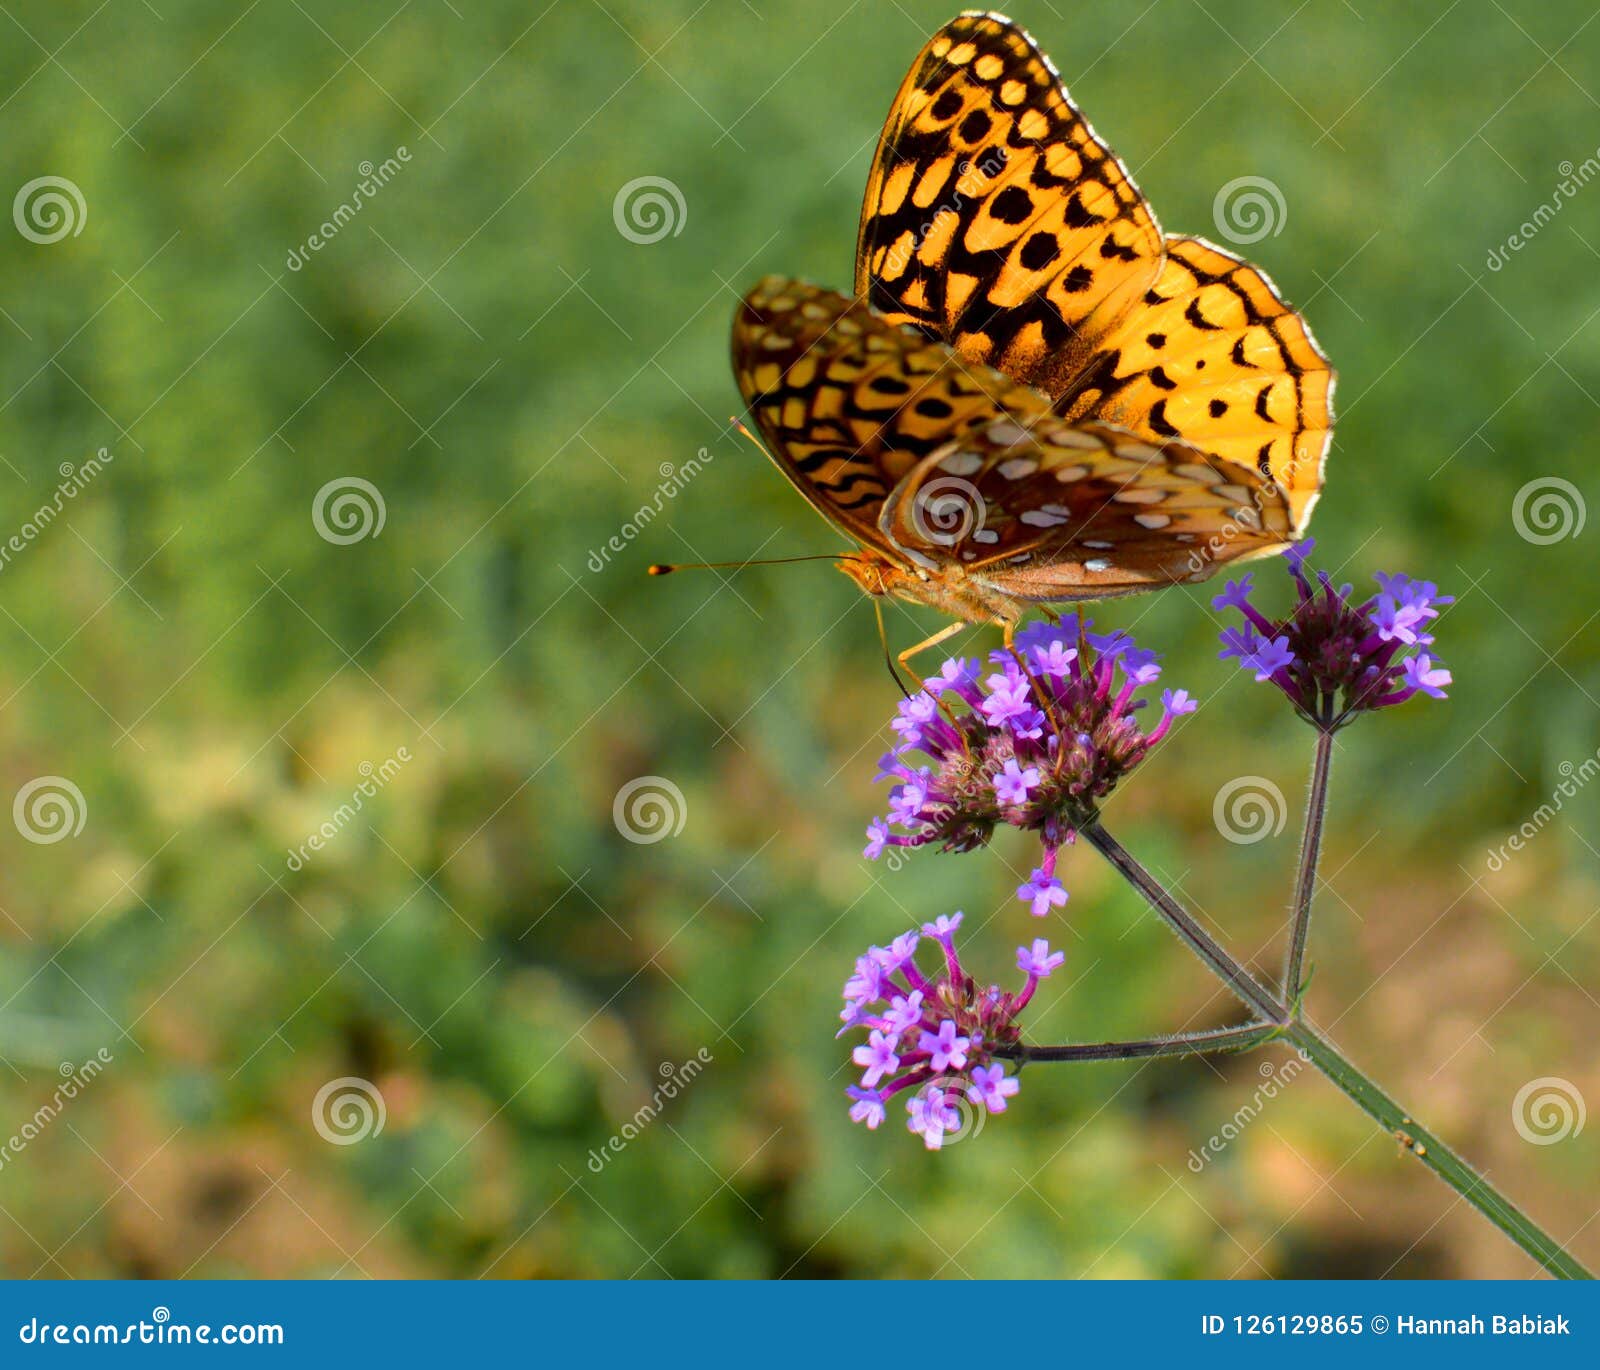 yellow butterfly on a dainty purple flower